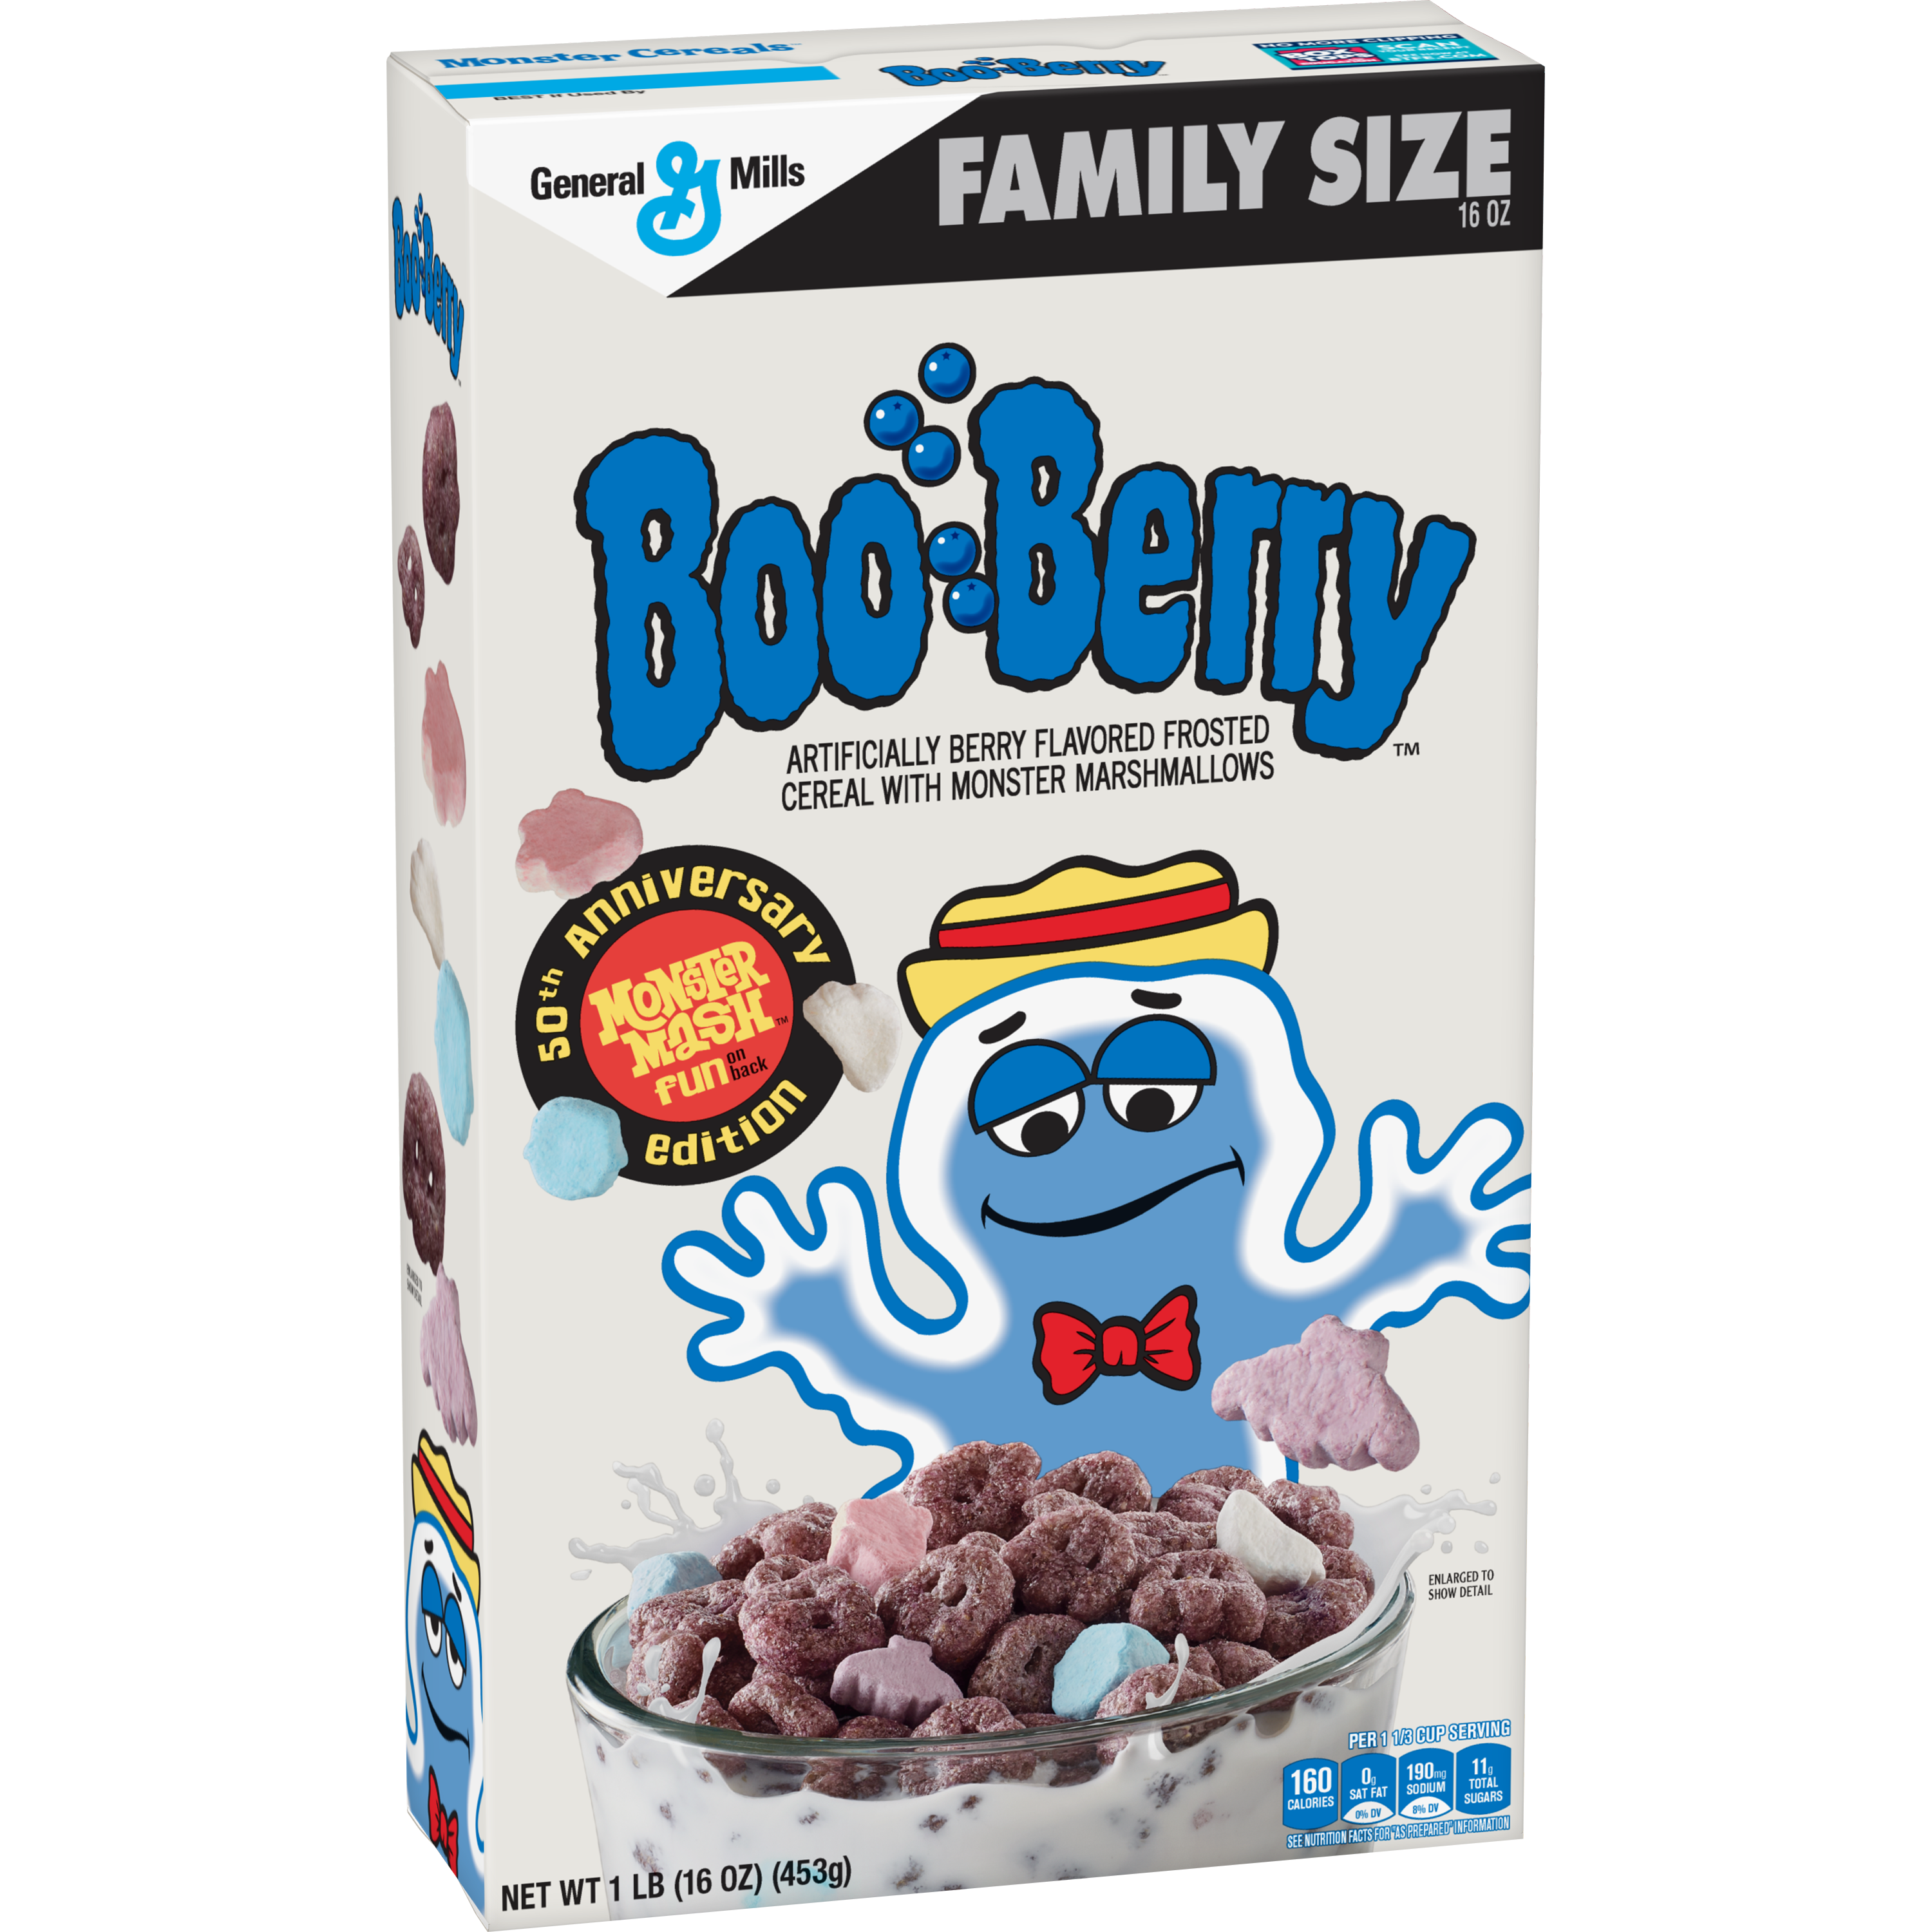 Retro Boo Berry cereal box